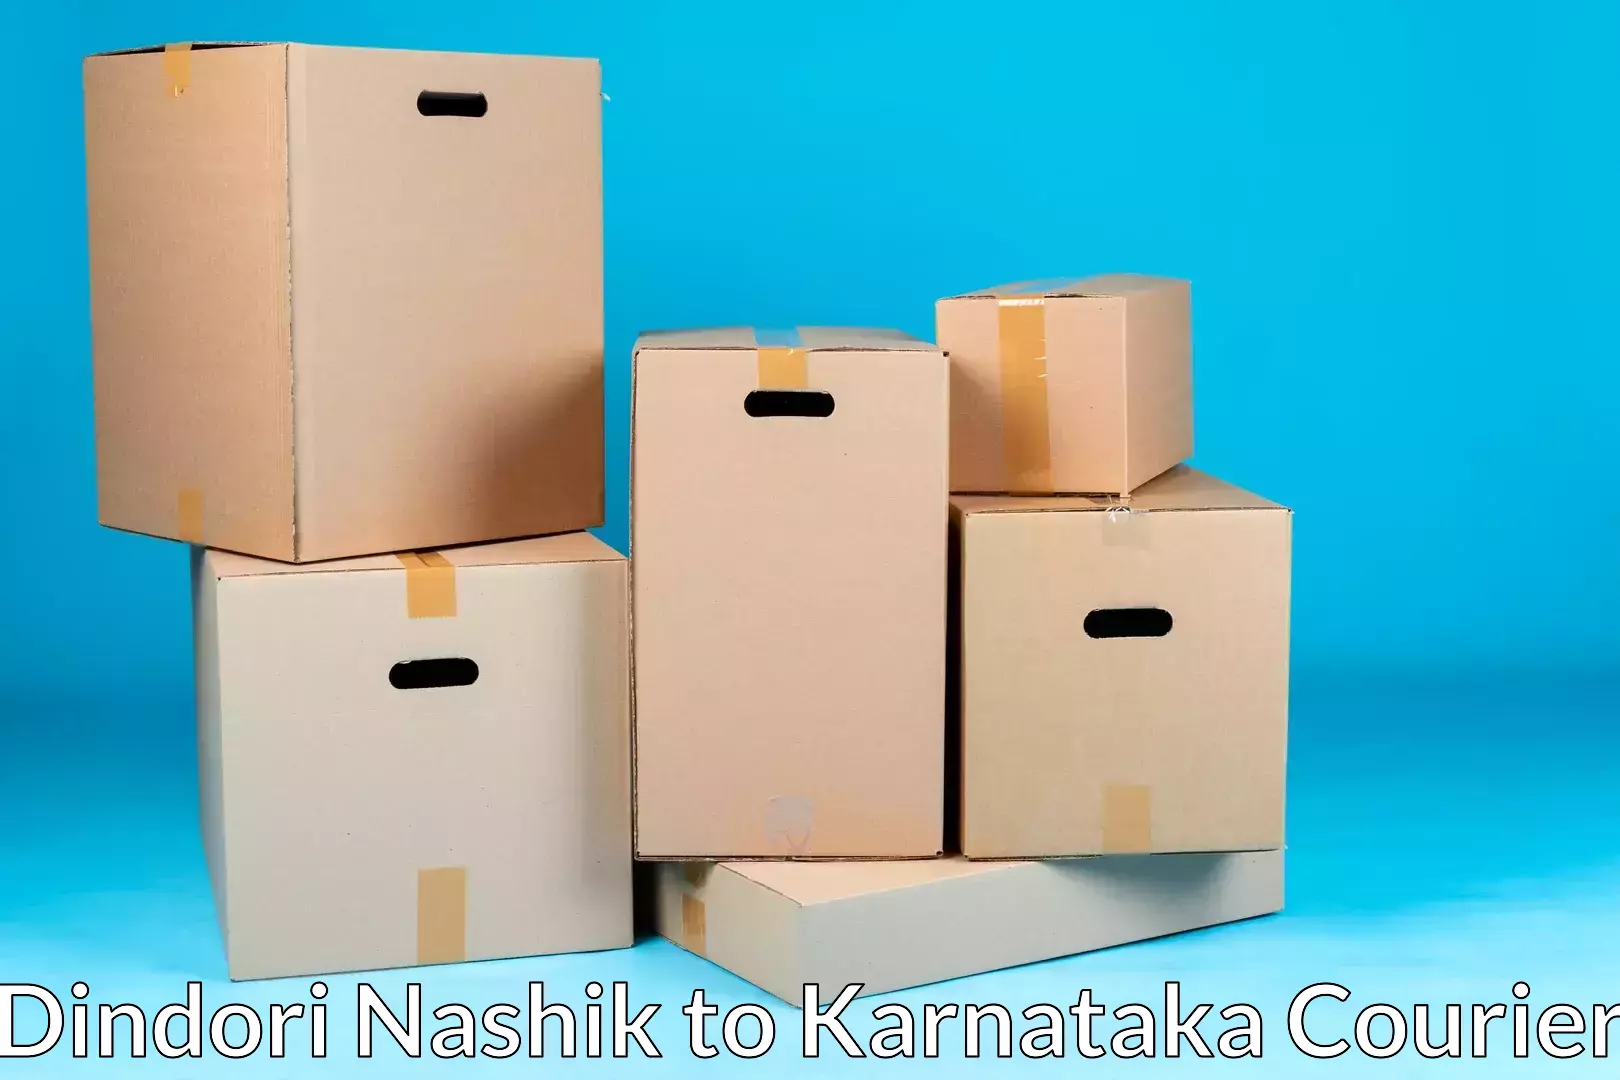 Residential moving services Dindori Nashik to Karnataka